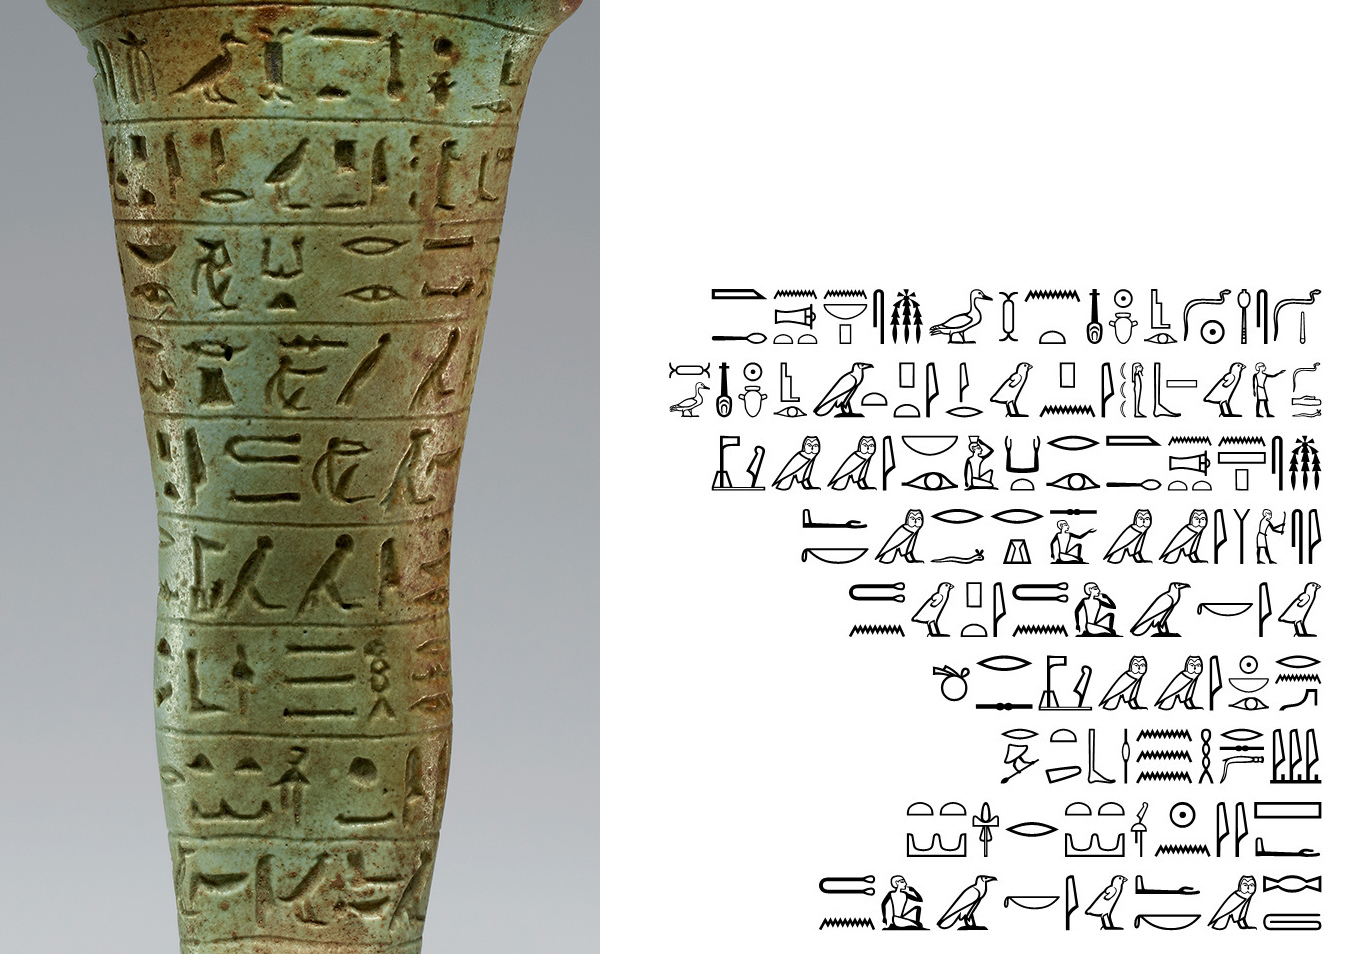 Detail of the spell inscribed on the ushabti for Neferibresaneith